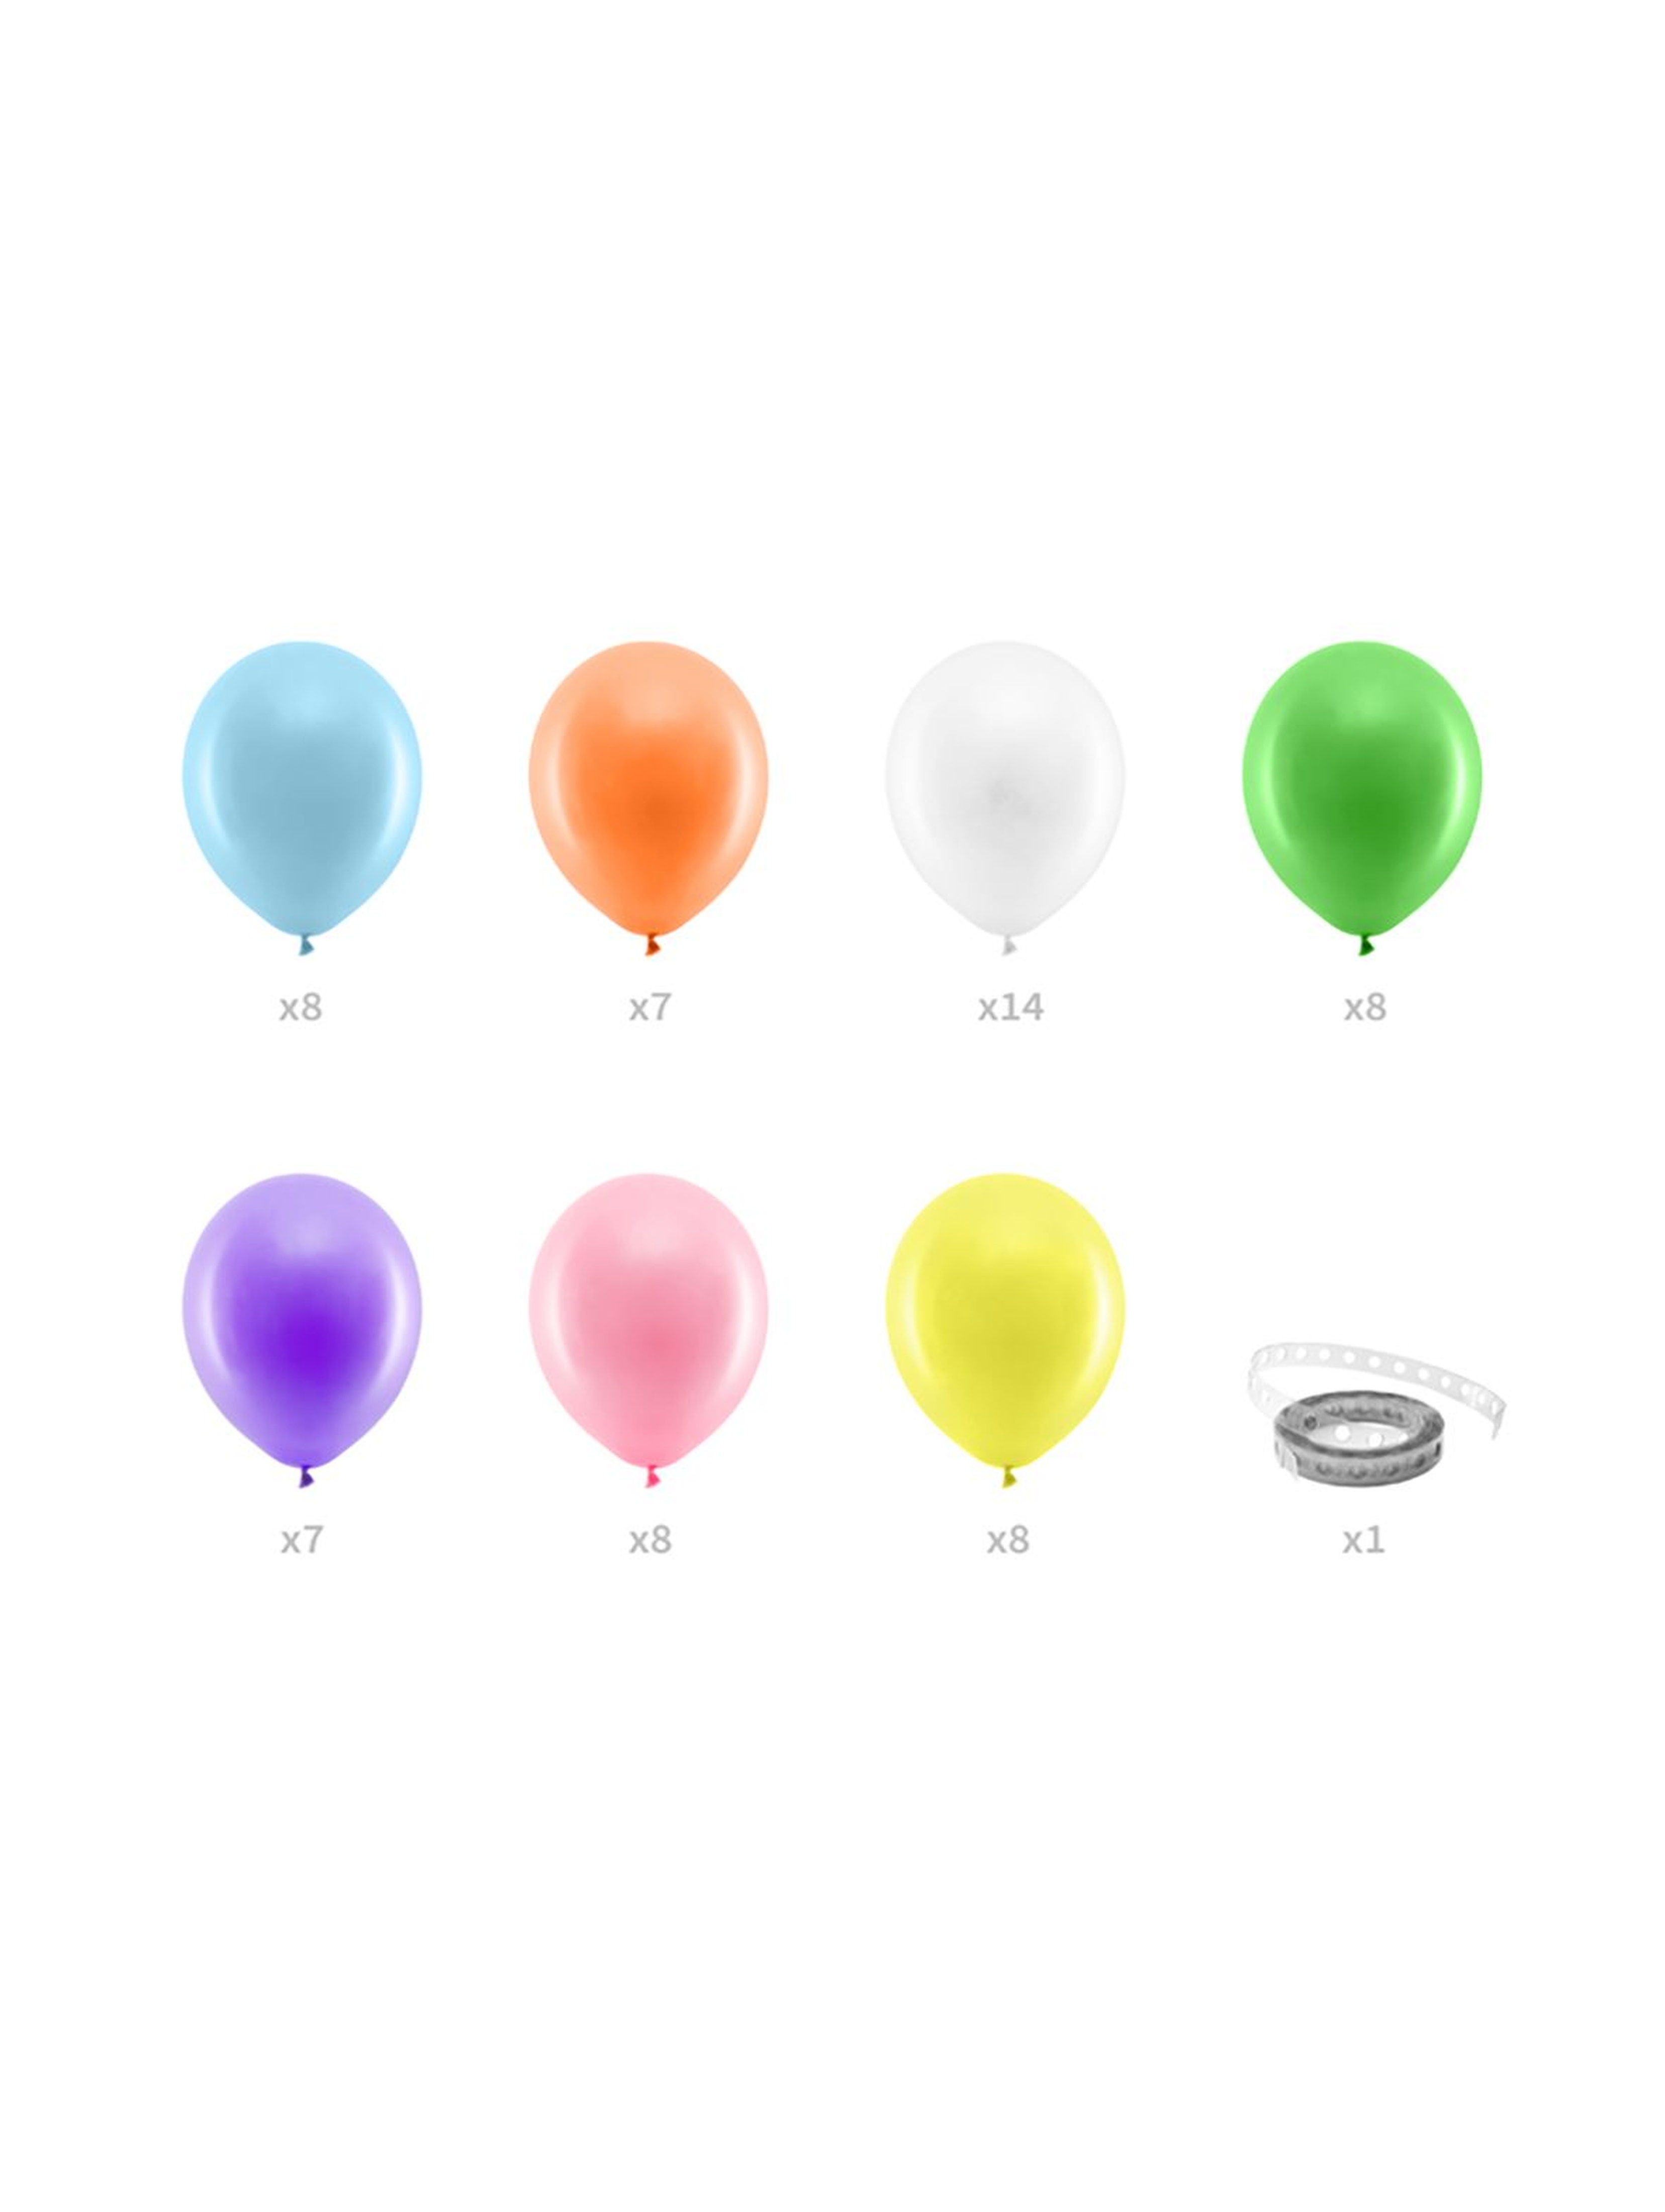 Girlanda balonowa - Tęcza 200cm - 60 balonów